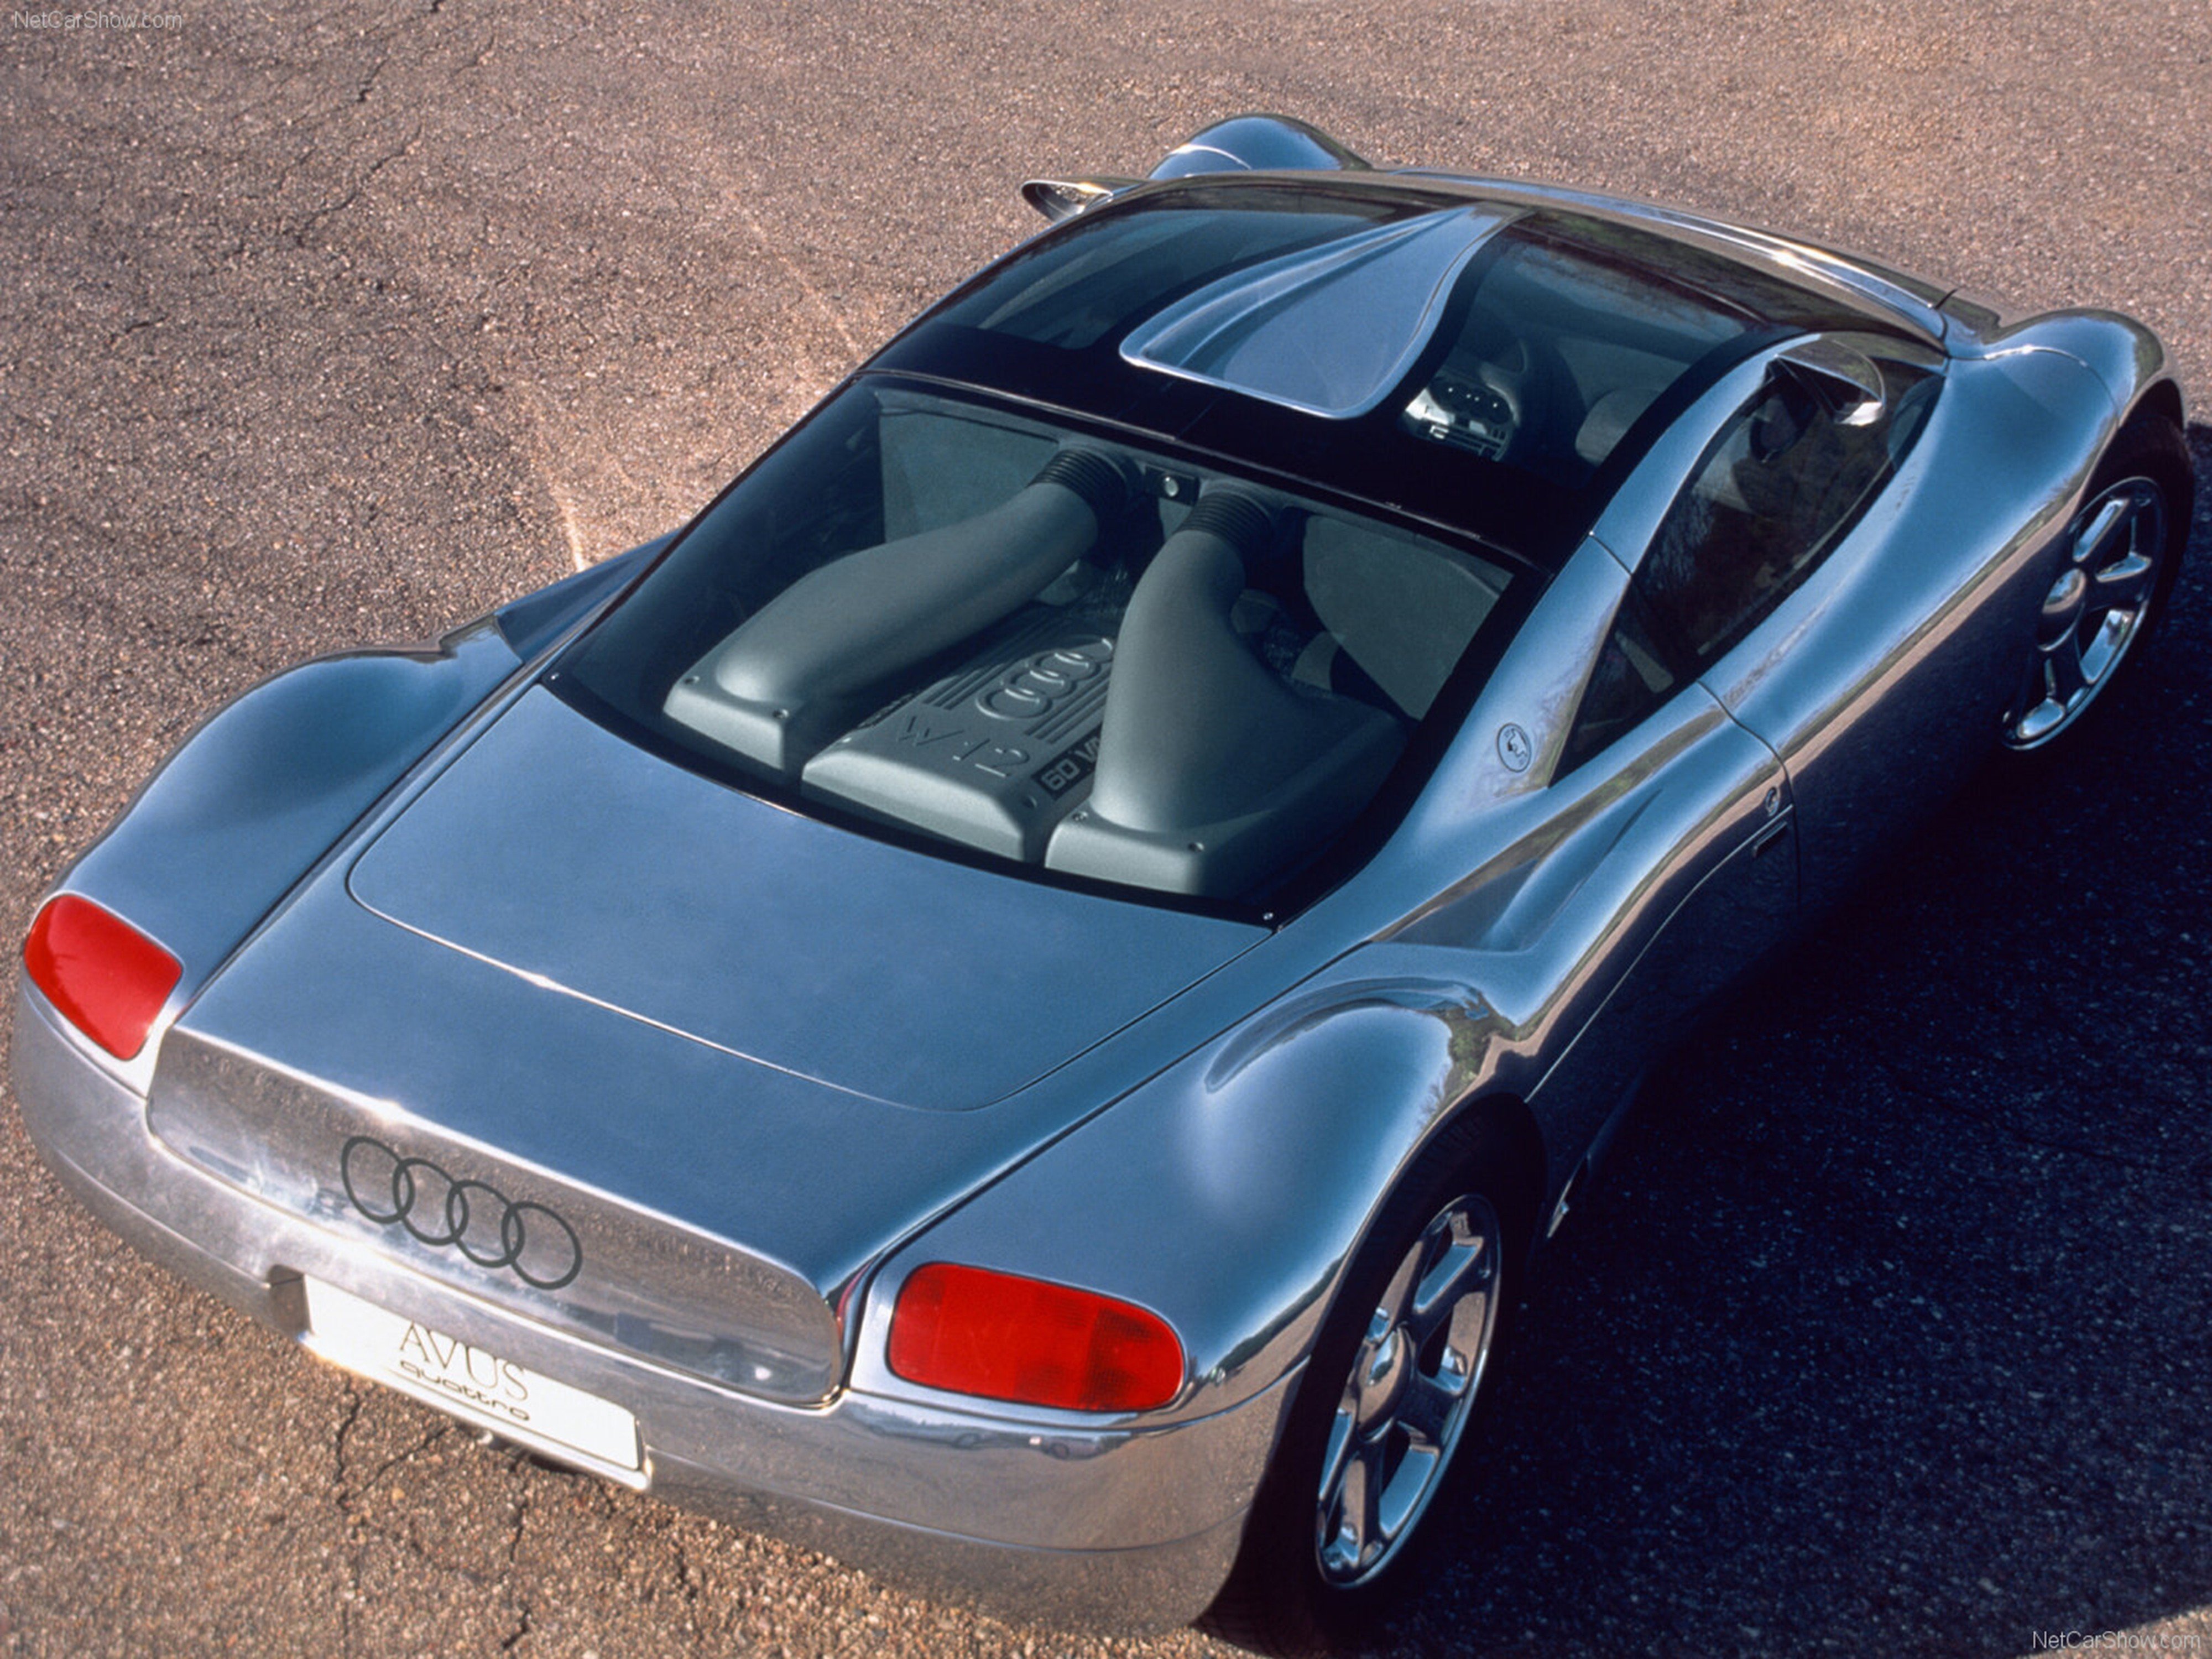 audi, Avus, Quattro, Concept, 1991, Supercar, Car, Germany, Wallpaper, 4000x3000 Wallpaper